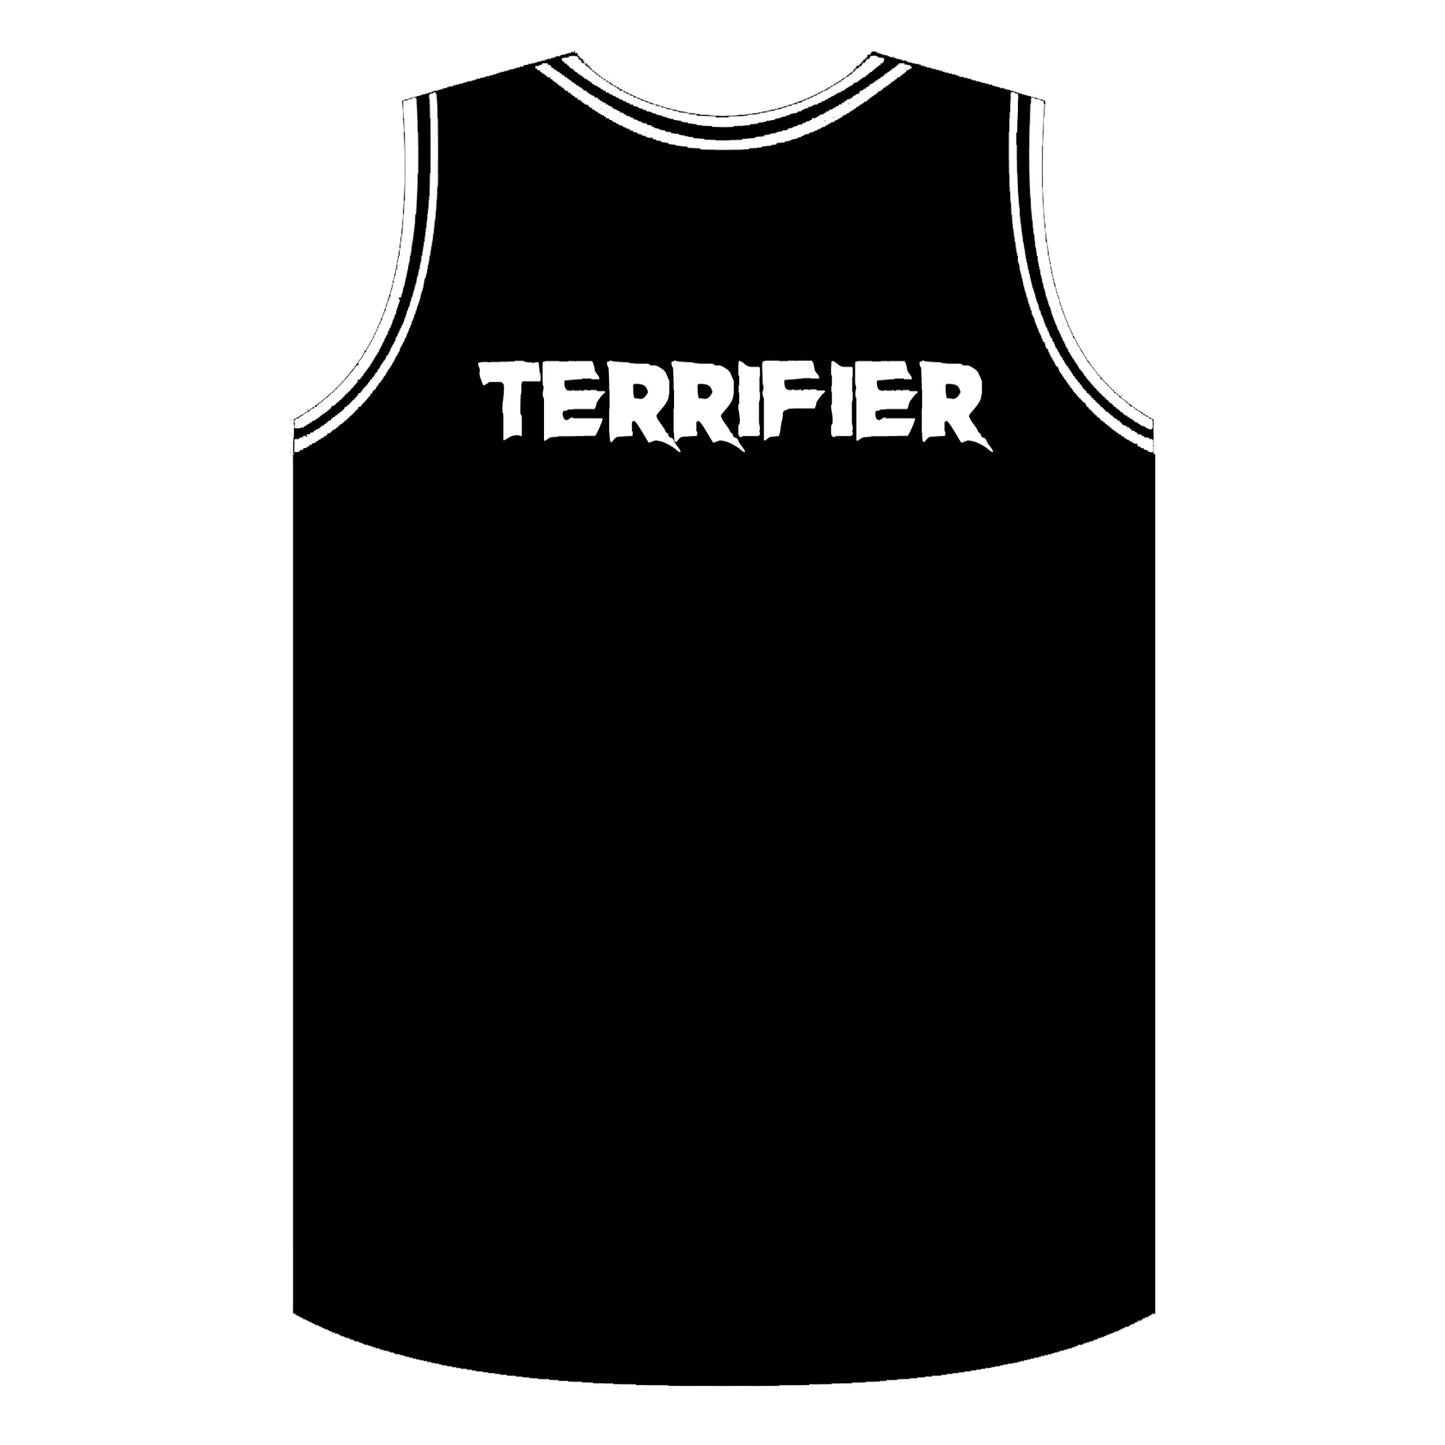 Terrifier - Basketball Jersey - Clean